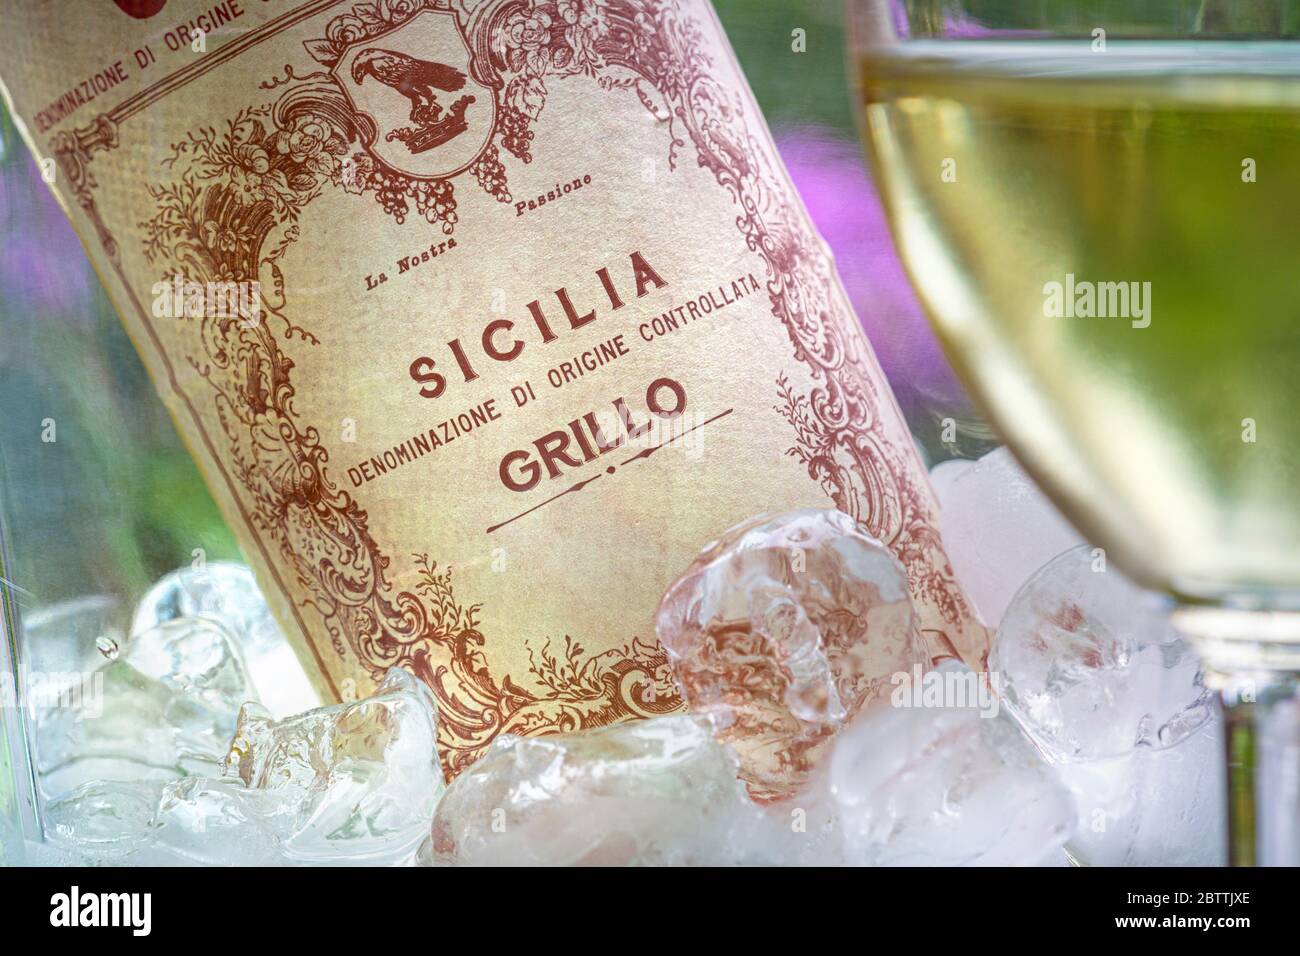 GRILLO SICILY BOUTEILLE de VIN DOC sicilien Grillo vin blanc dans une cave à vin avec glace et verre versé en premier plan terrasse de jardin fleuri situation Italie Banque D'Images